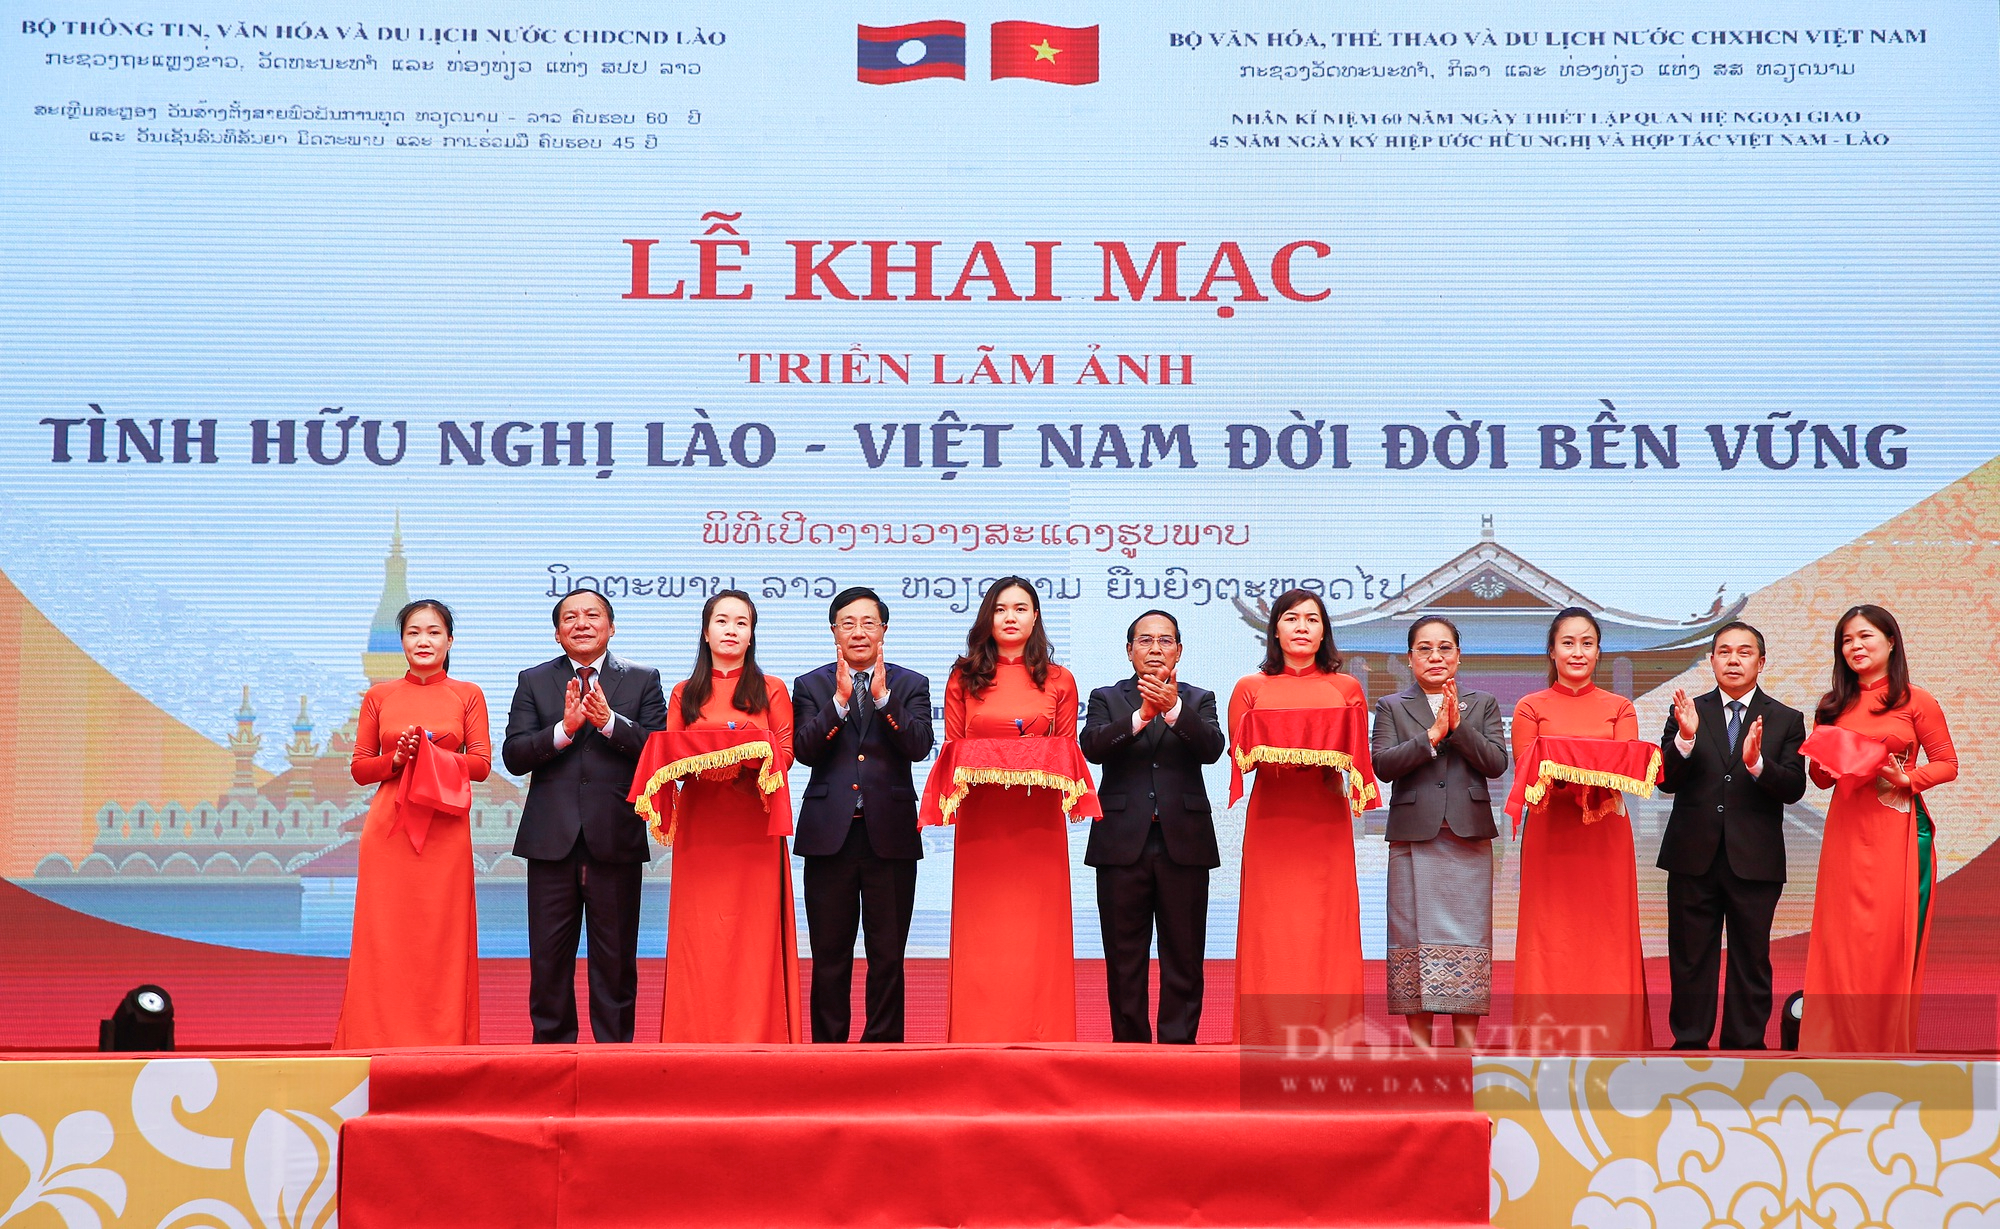 Phó Chủ tịch nước Lào dự Khai mạc triển lãm ảnh 'Tình hữu nghị Lào - Việt Nam đời đời bền vững' - Ảnh 9.